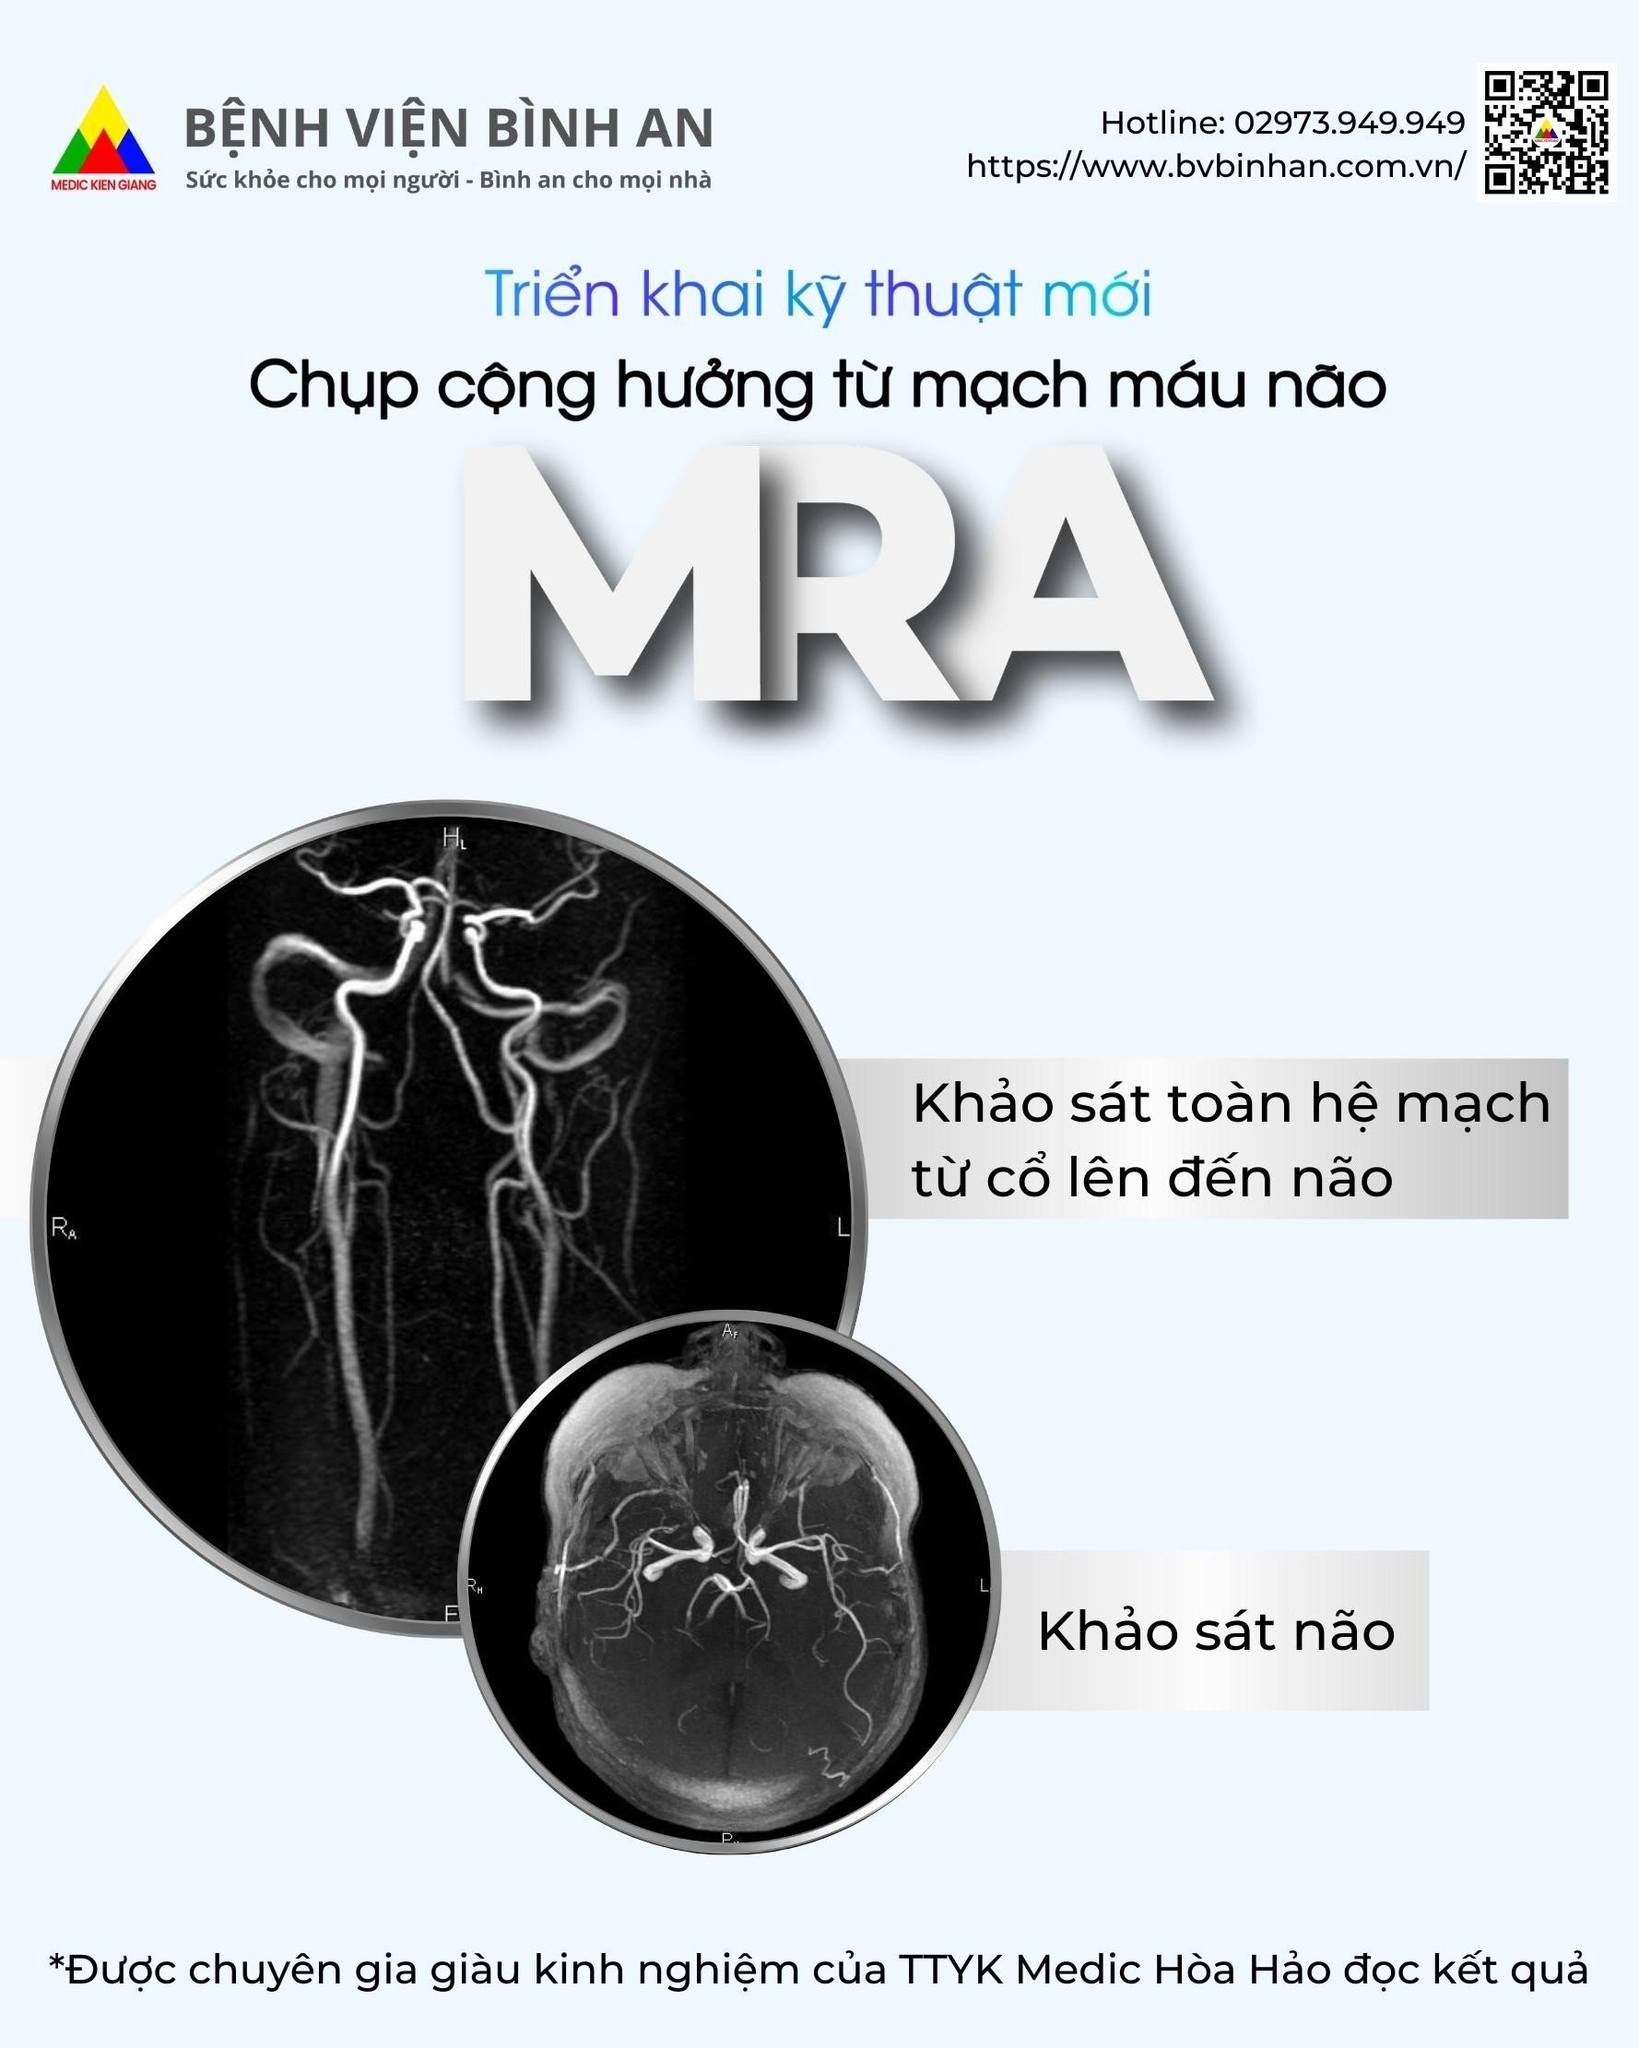 Triển khai kỹ thuật mới: chụp cộng hưởng từ mạch máu não (MRA) tại Bệnh viện Bình An